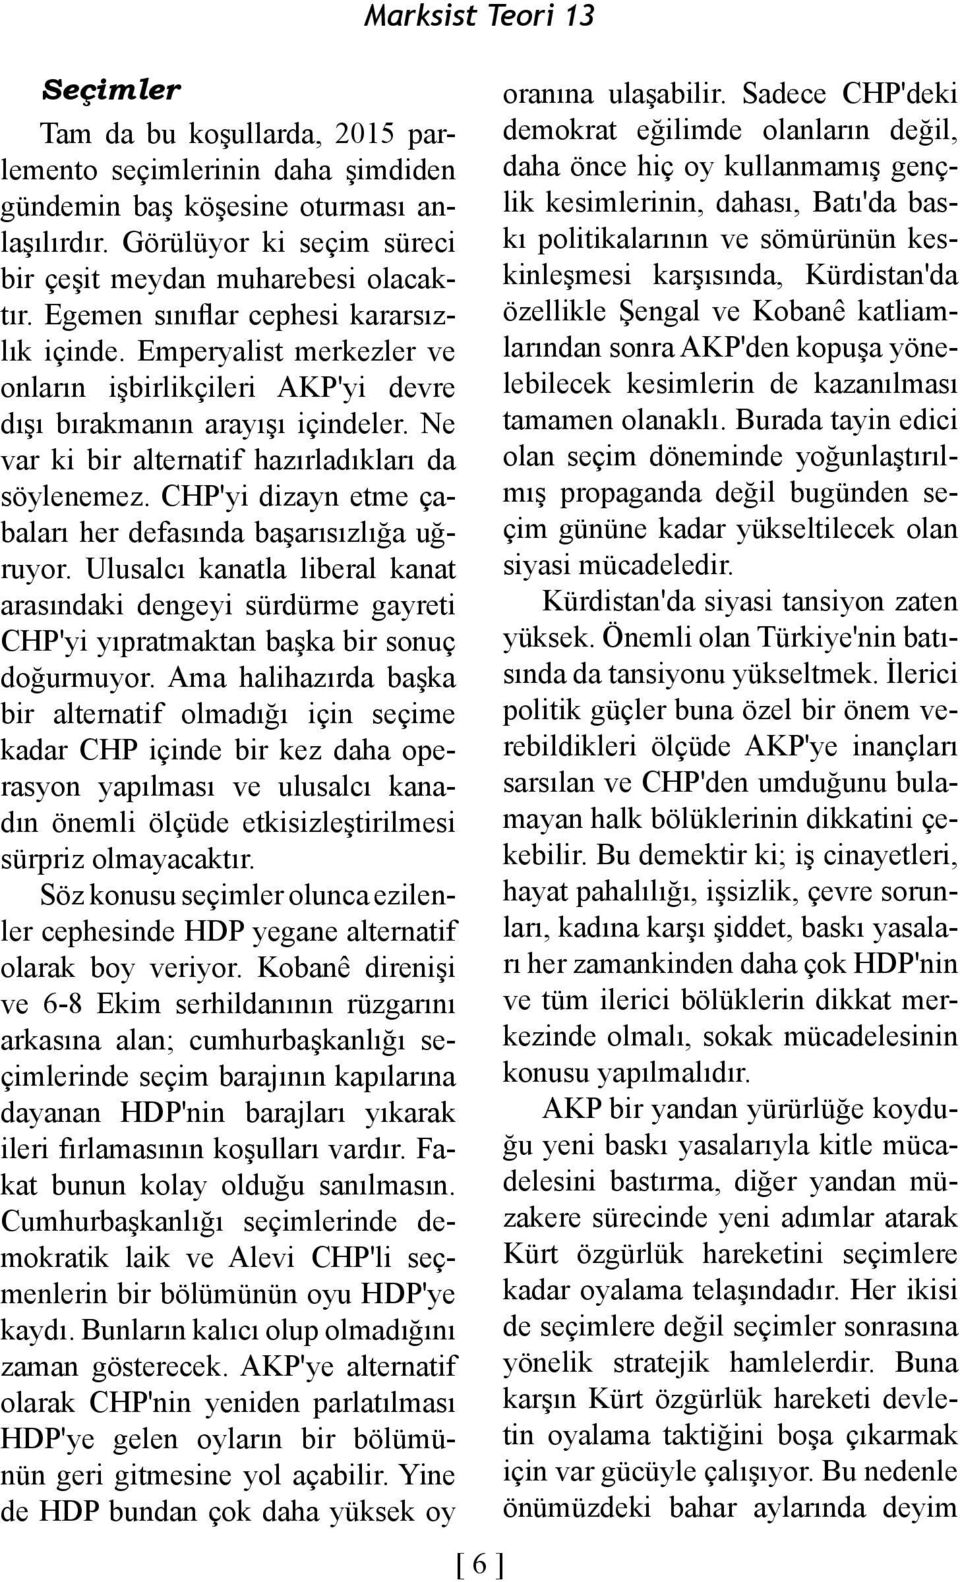 CHP'yi dizayn etme çabaları her defasında başarısızlığa uğruyor. Ulusalcı kanatla liberal kanat arasındaki dengeyi sürdürme gayreti CHP'yi yıpratmaktan başka bir sonuç doğurmuyor.